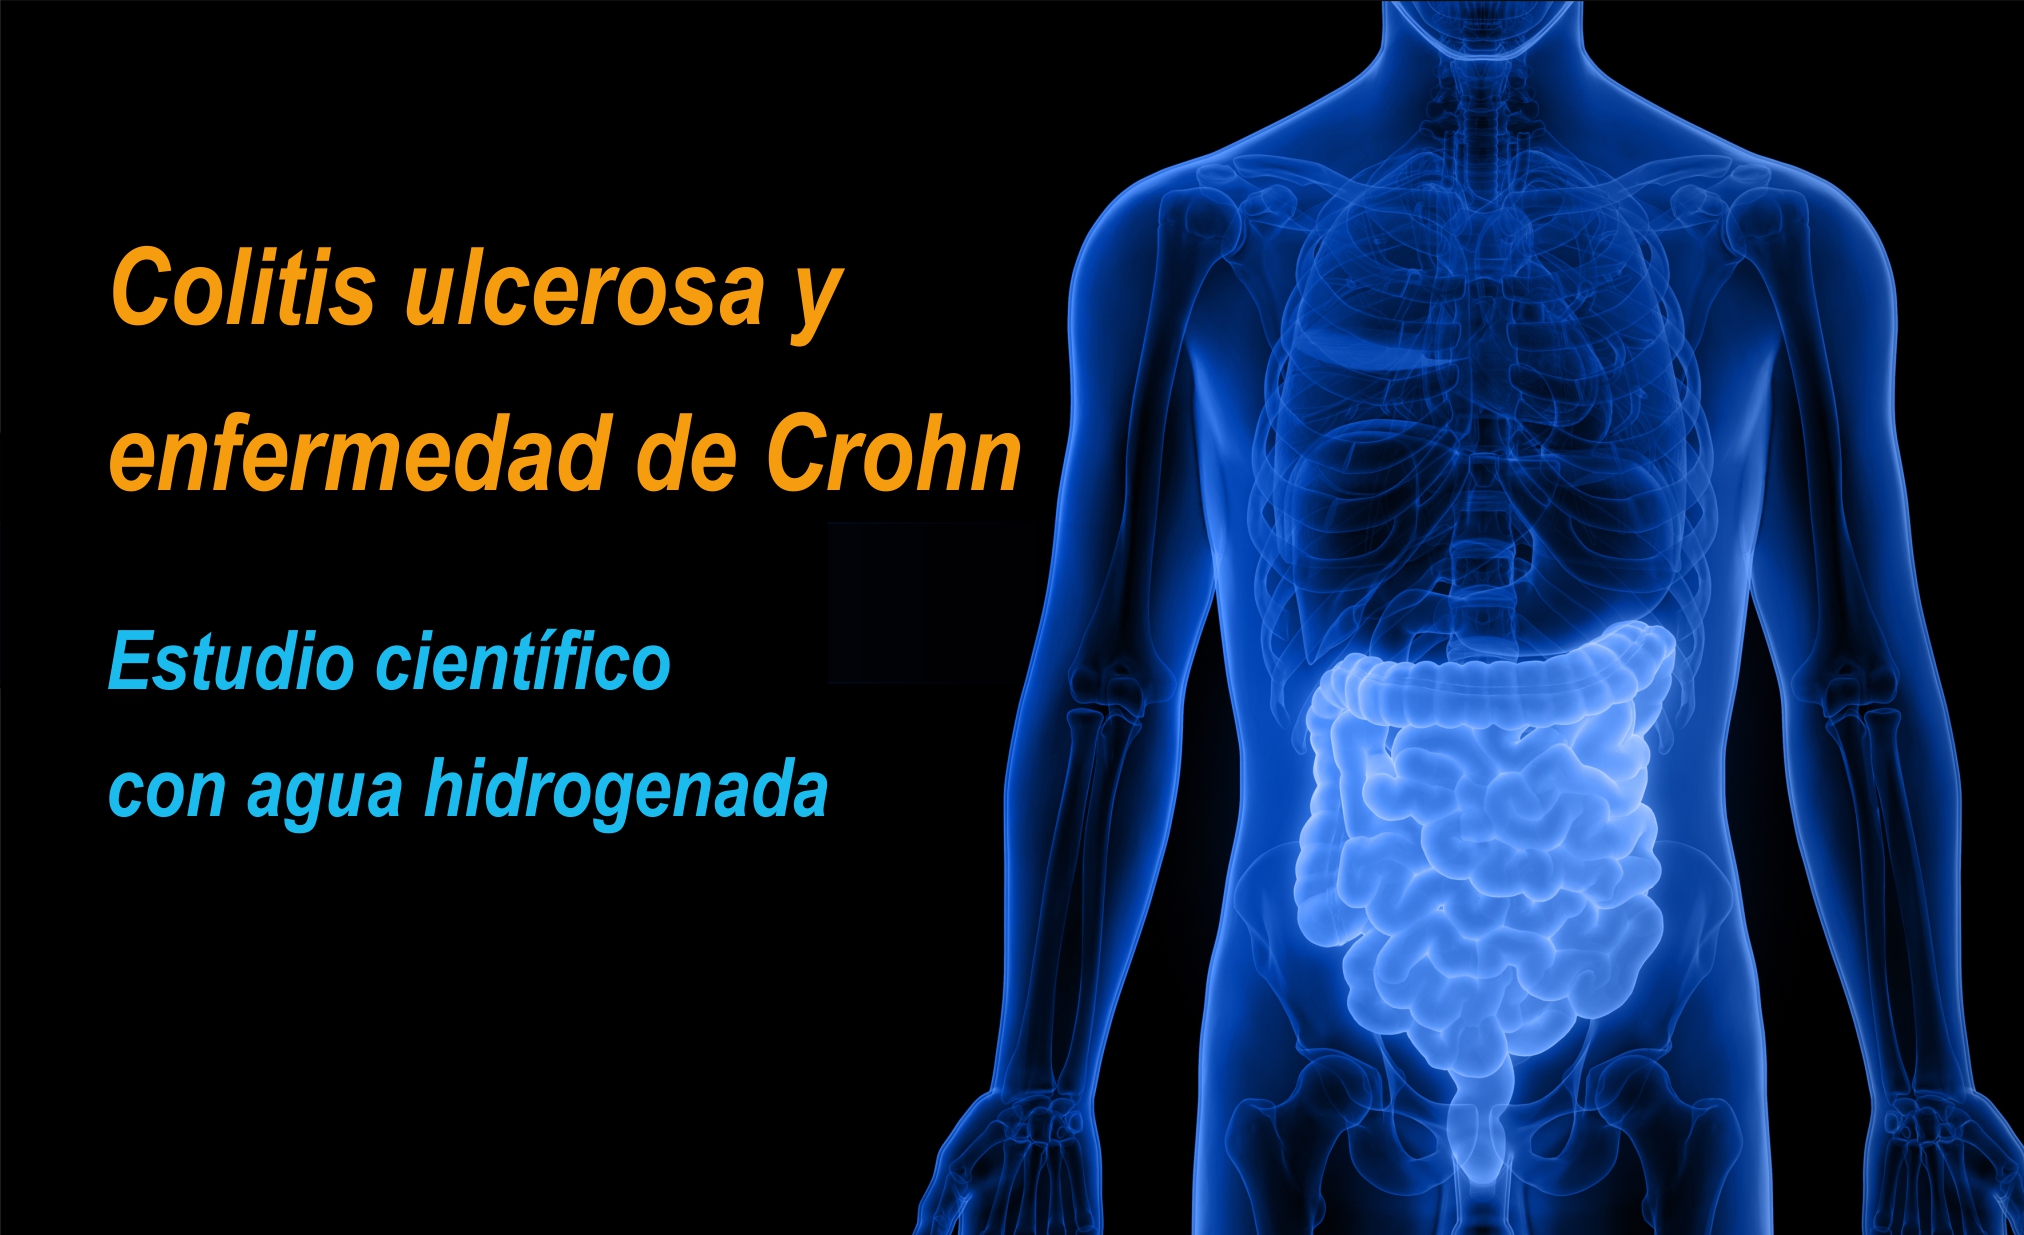 Beber agua hidrogenada protege contra la colitis ulcerosa y la enfermedad de Crohn